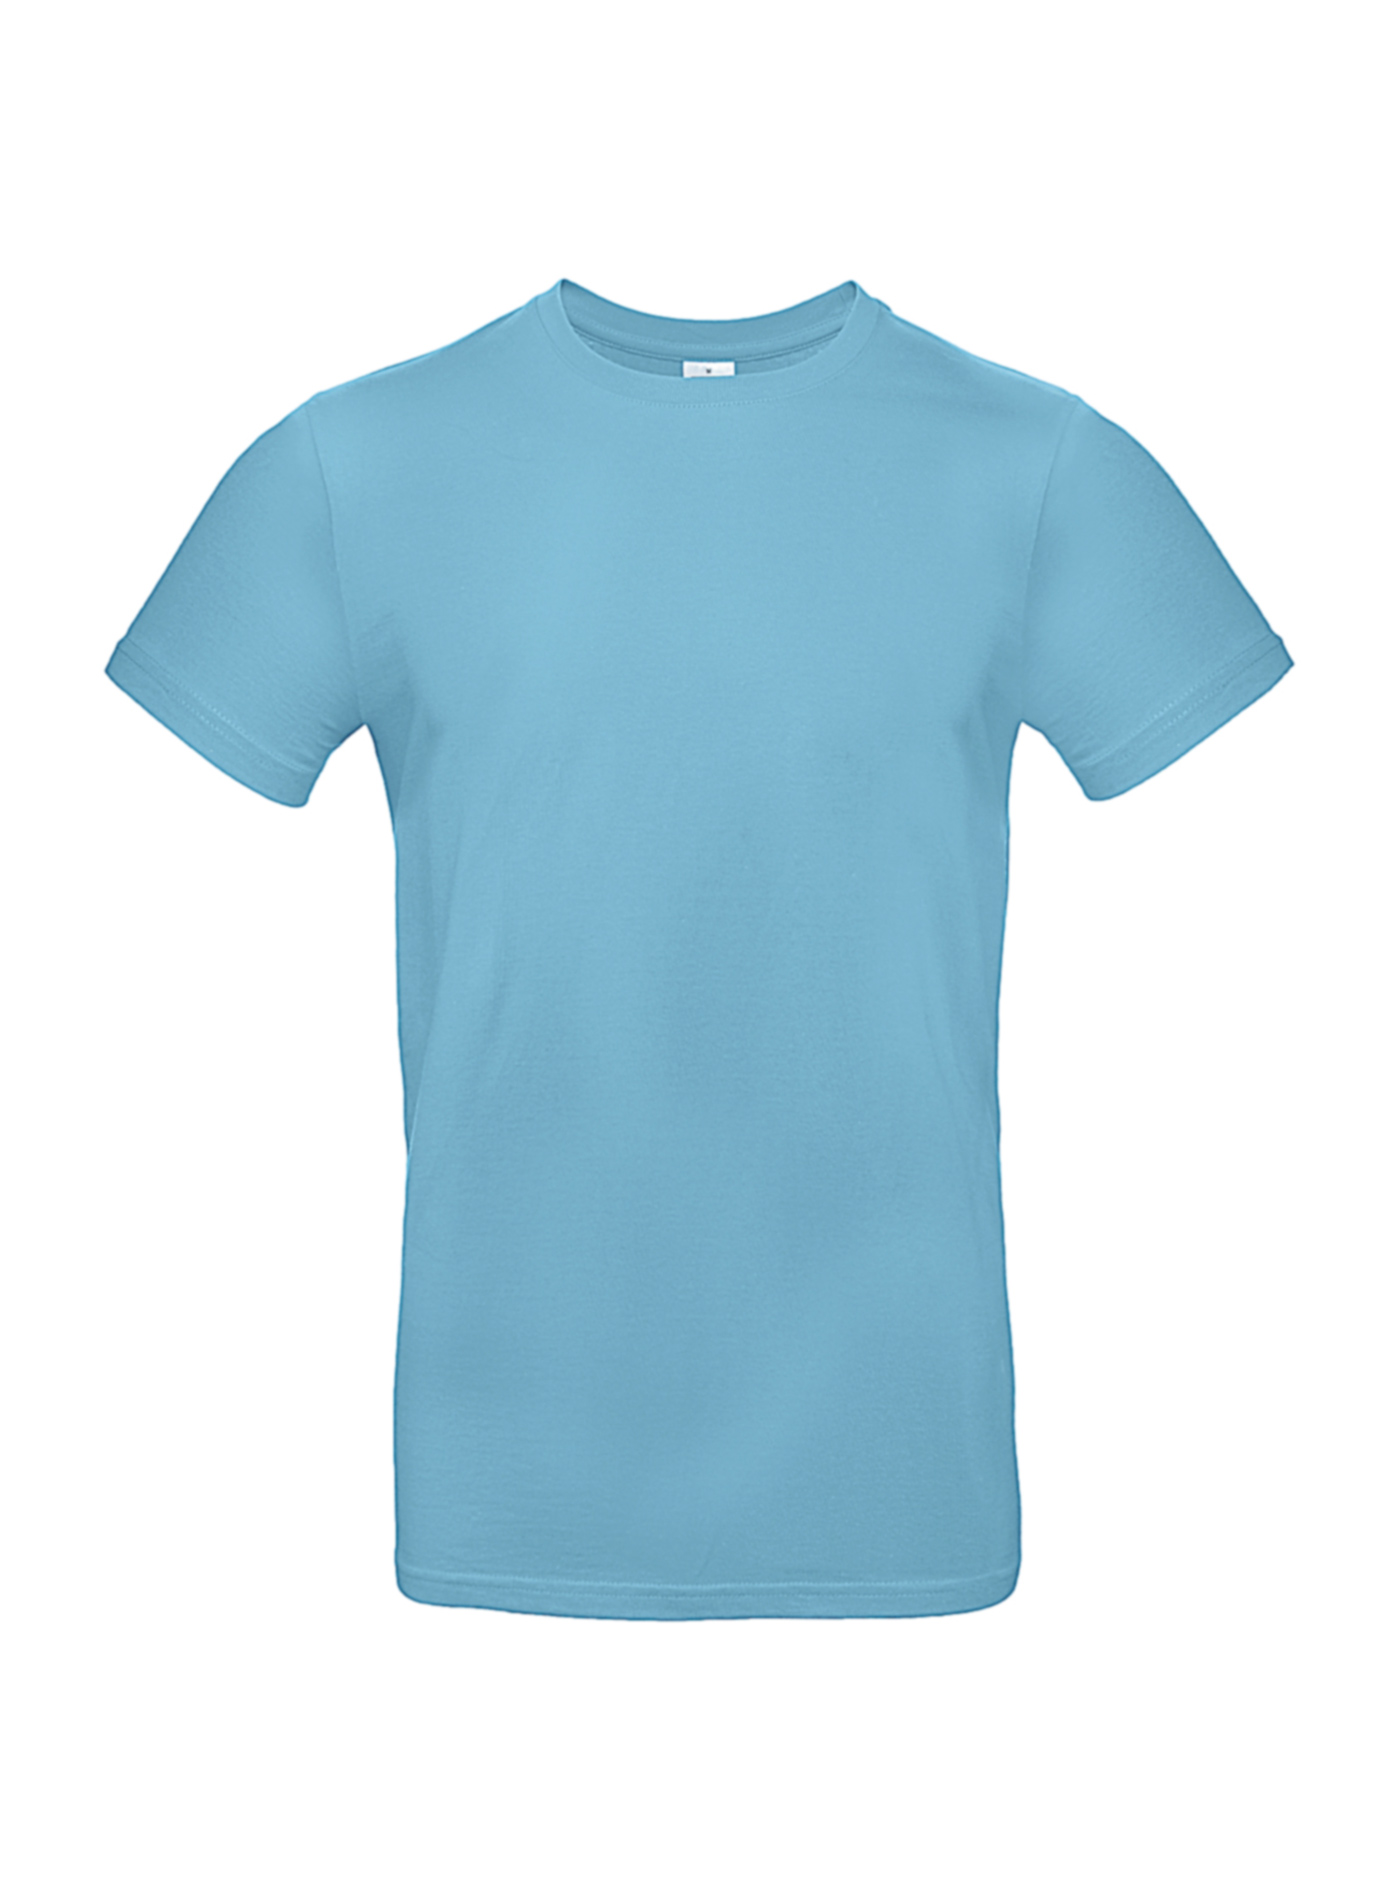 Silnější bavlněné pánské tričko - Tyrkysově modrá L